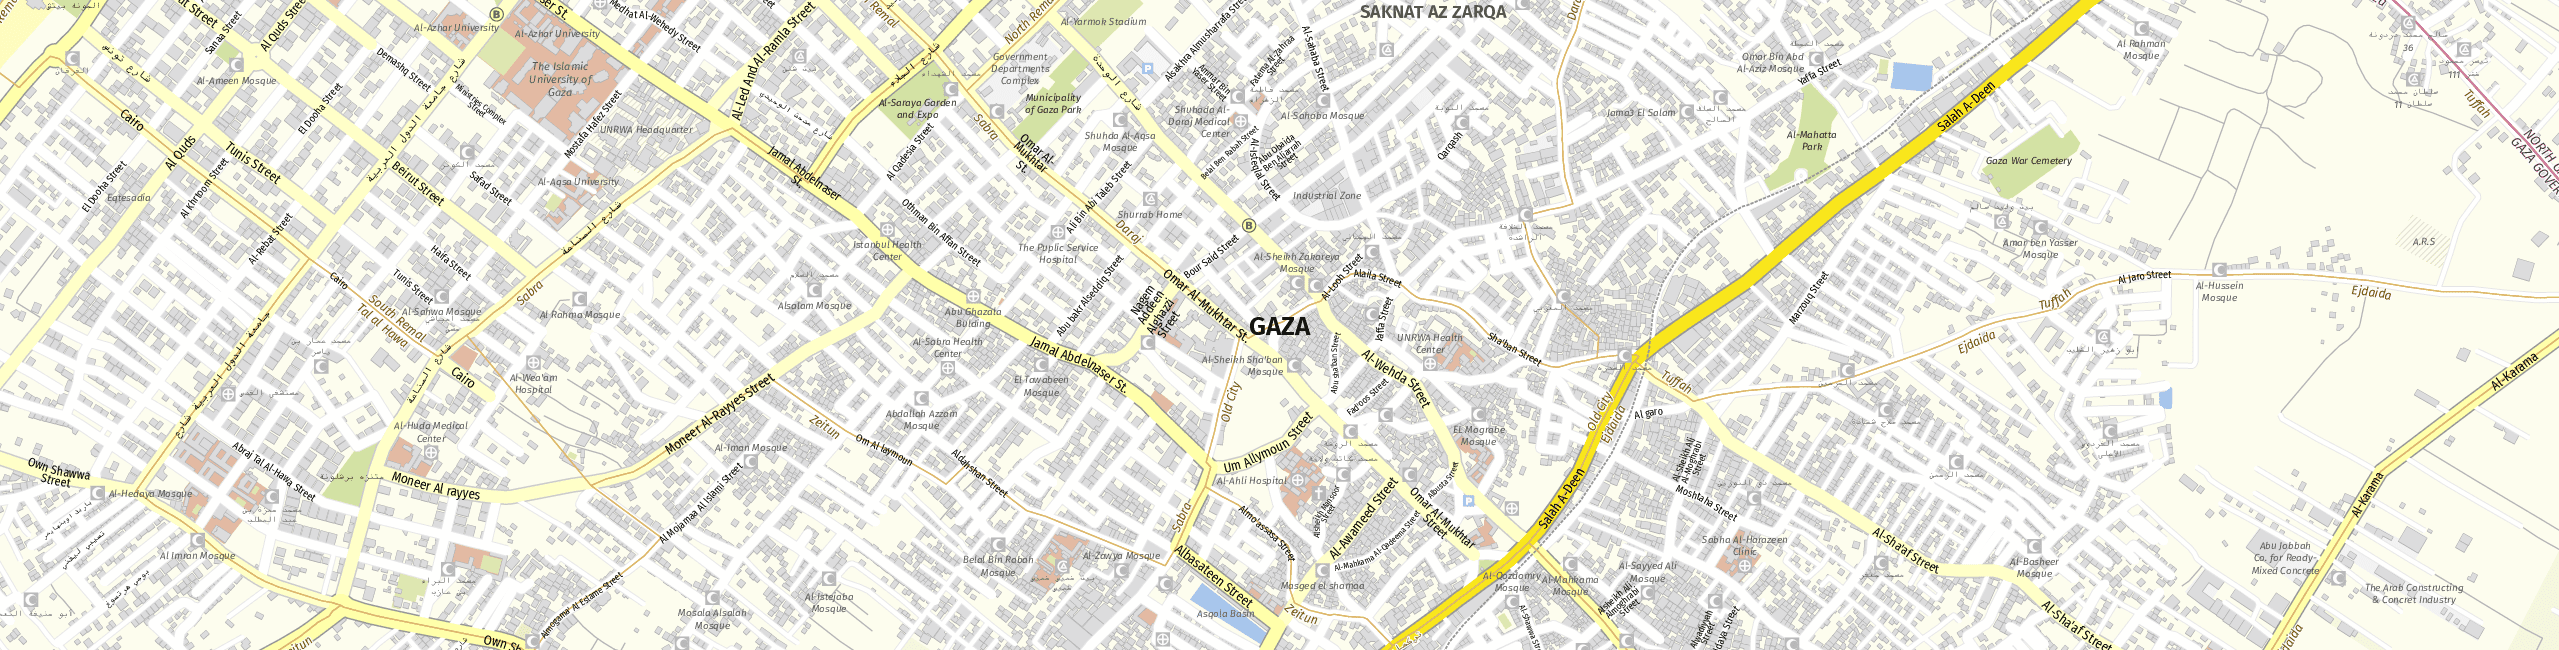 Stadtplan Gaza zum Downloaden.